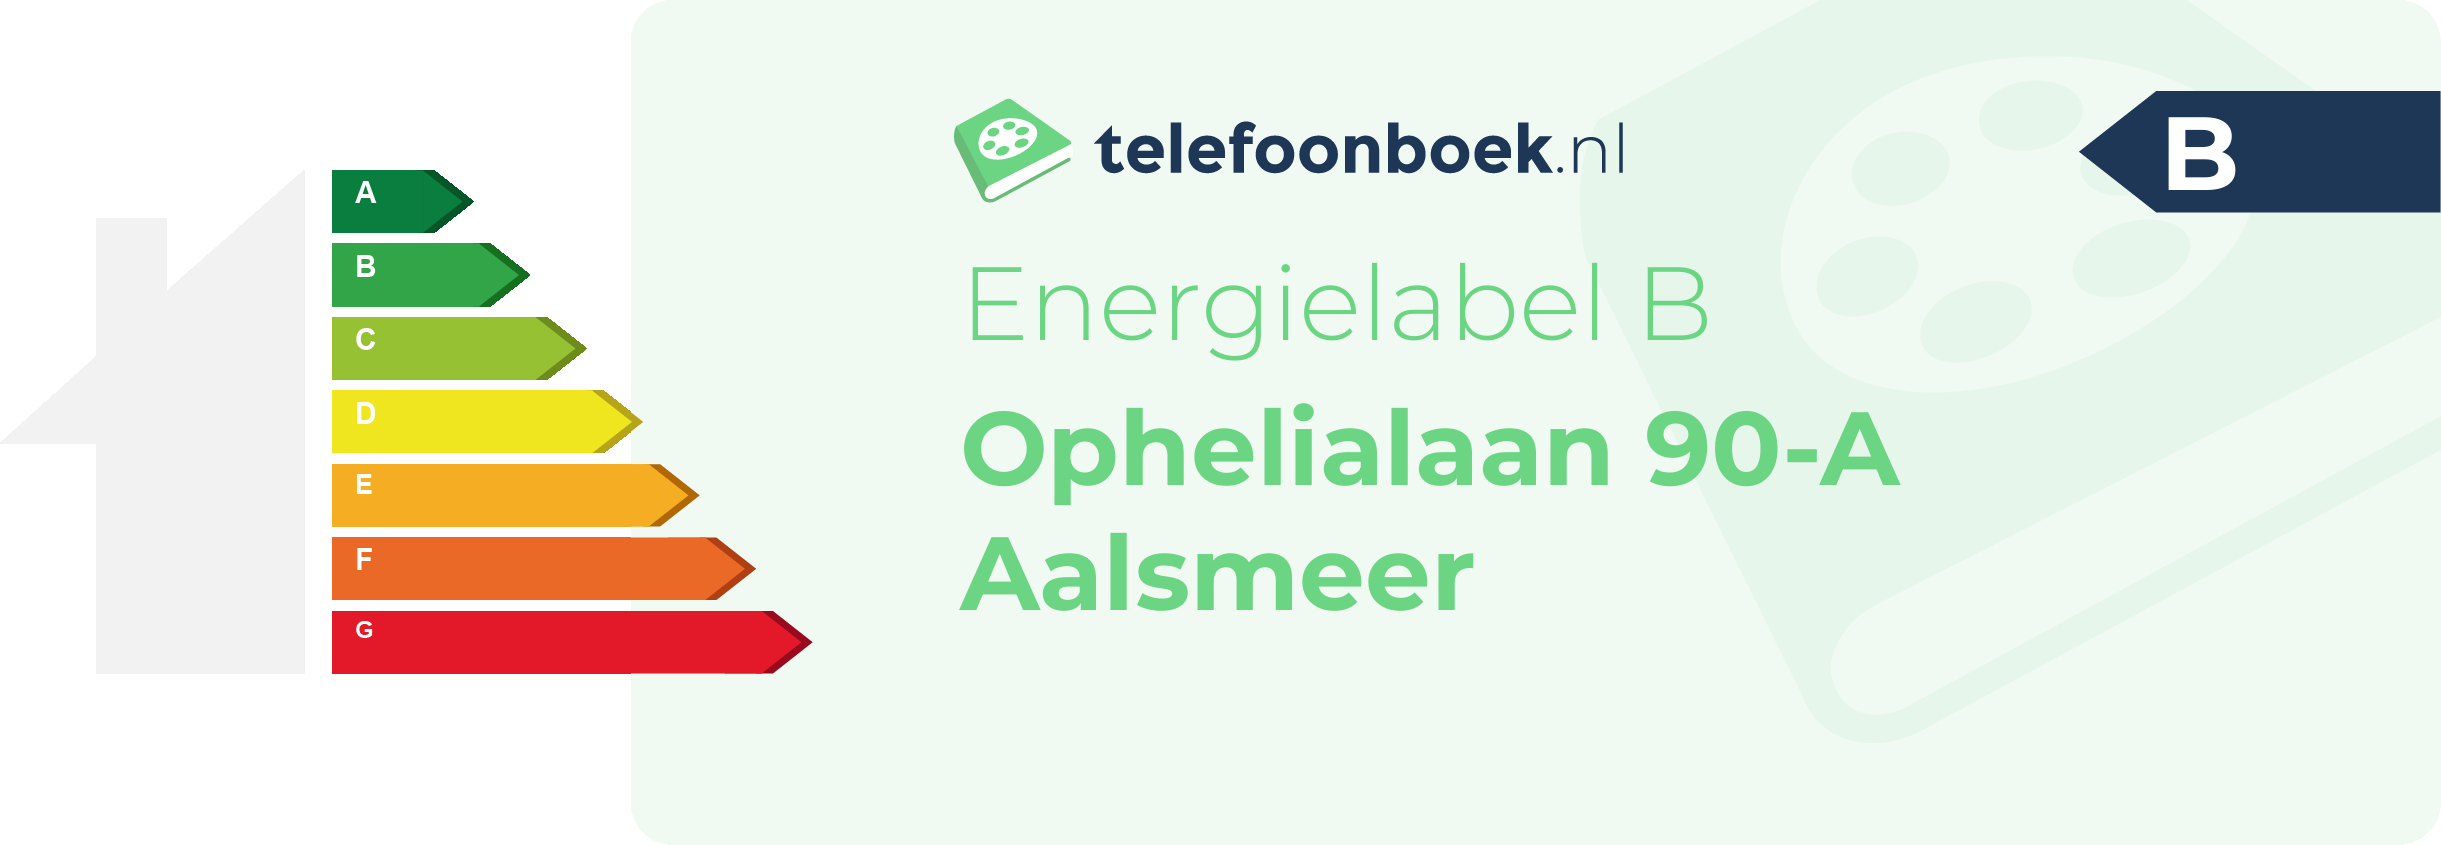 Energielabel Ophelialaan 90-A Aalsmeer